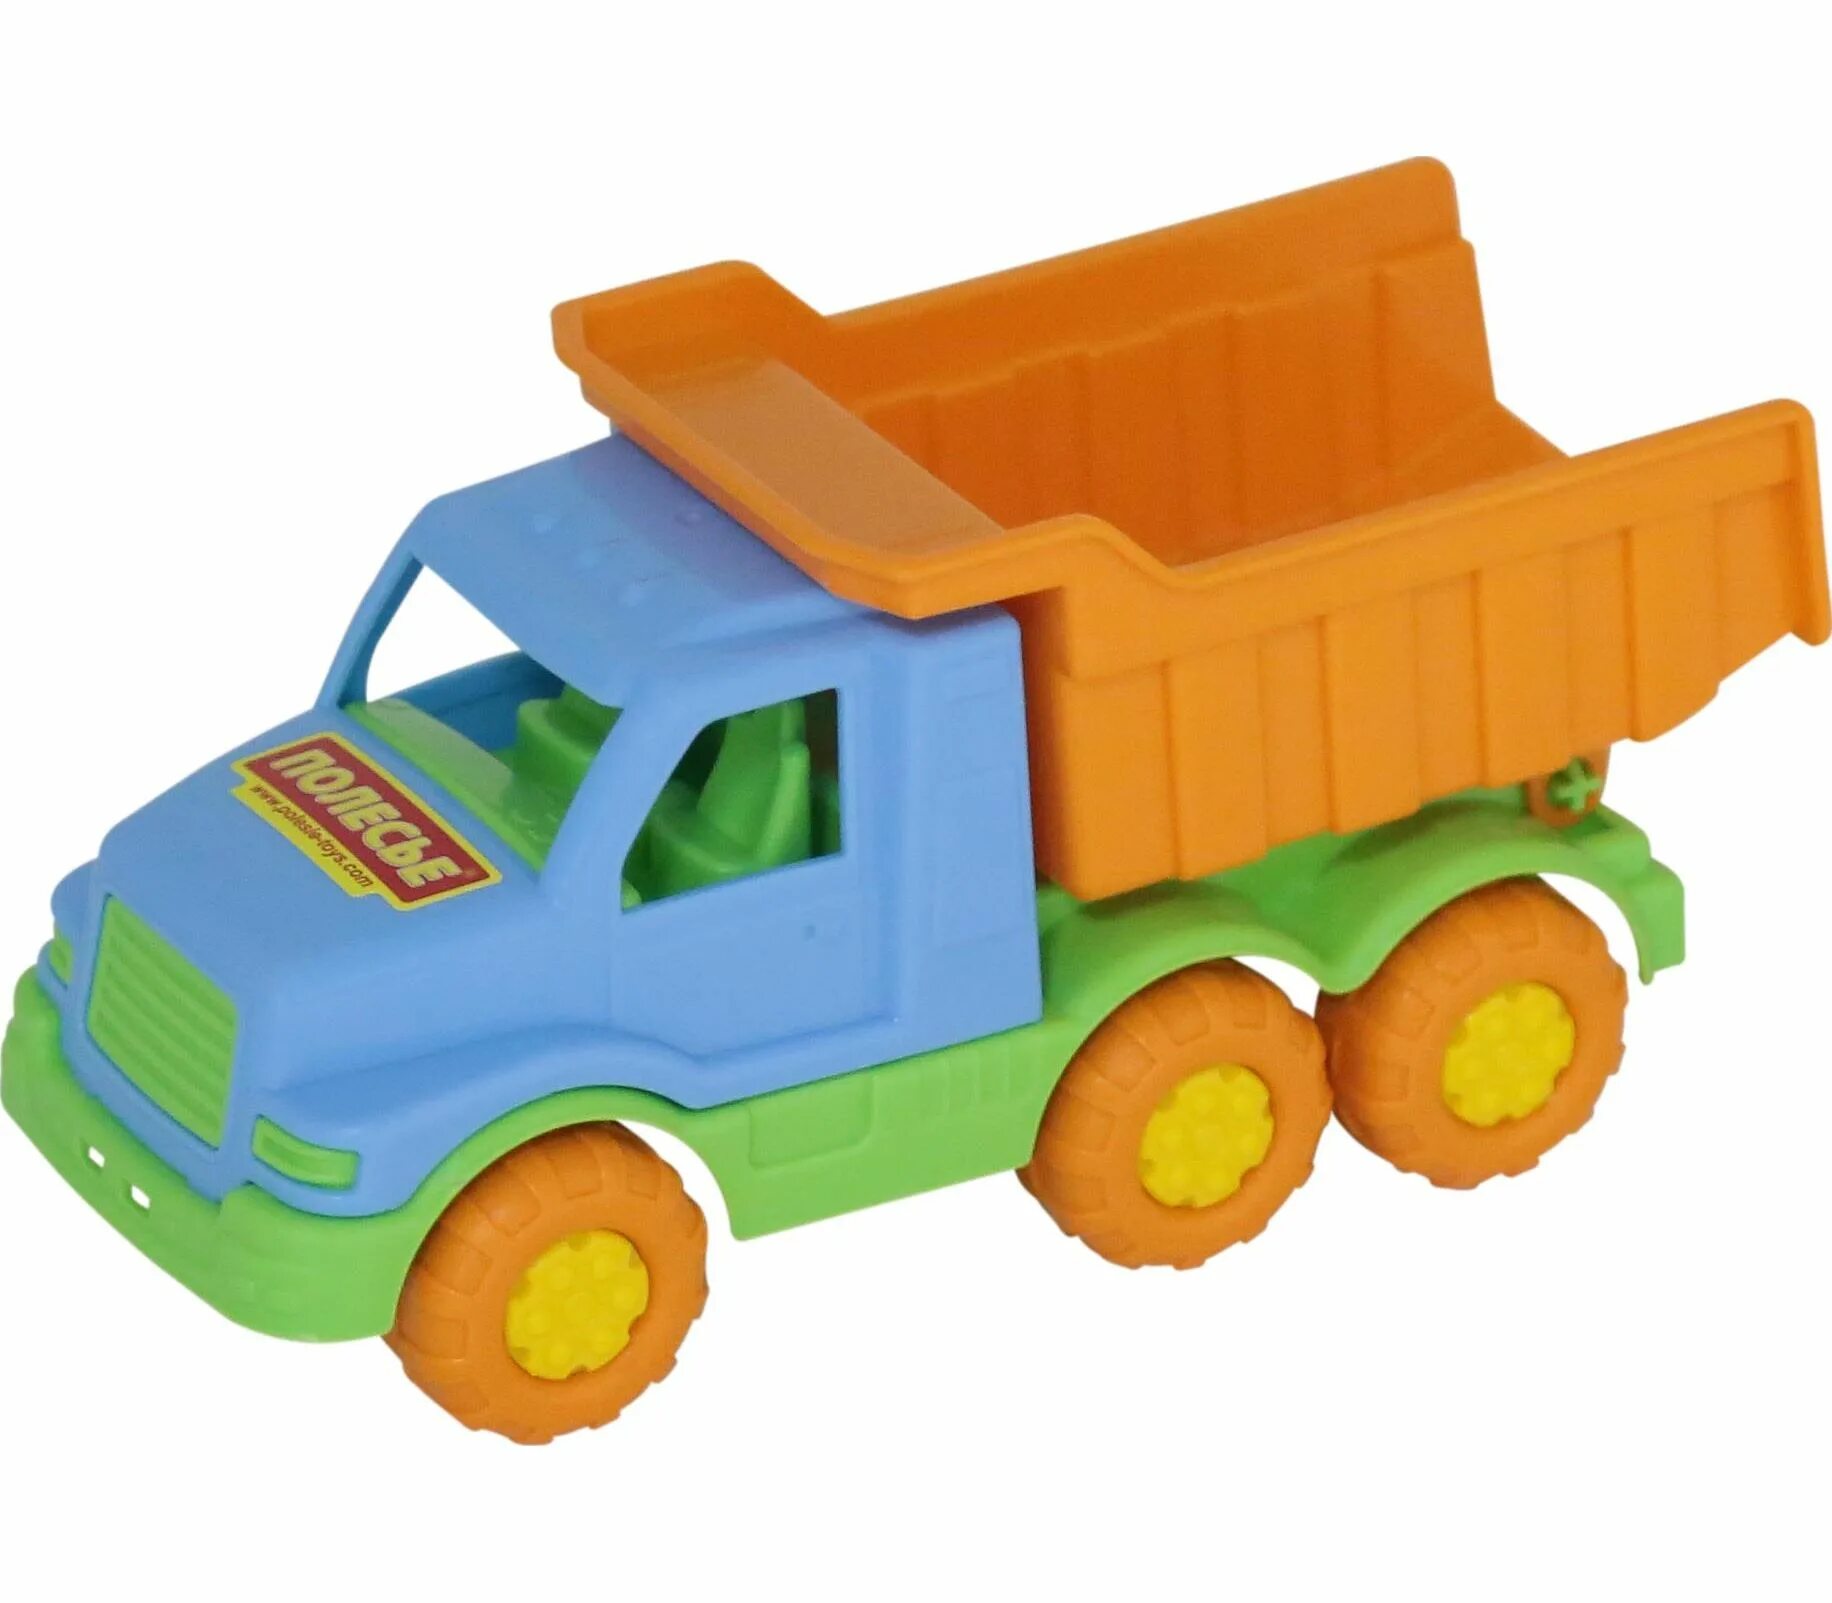 Максик 2. Самосвал Максик игрушечный грузовик. Полесье игрушка развивающая "автомобиль-самосвал" (в сеточке). Самосвал игрушка Полесье. 75861 Полесье.